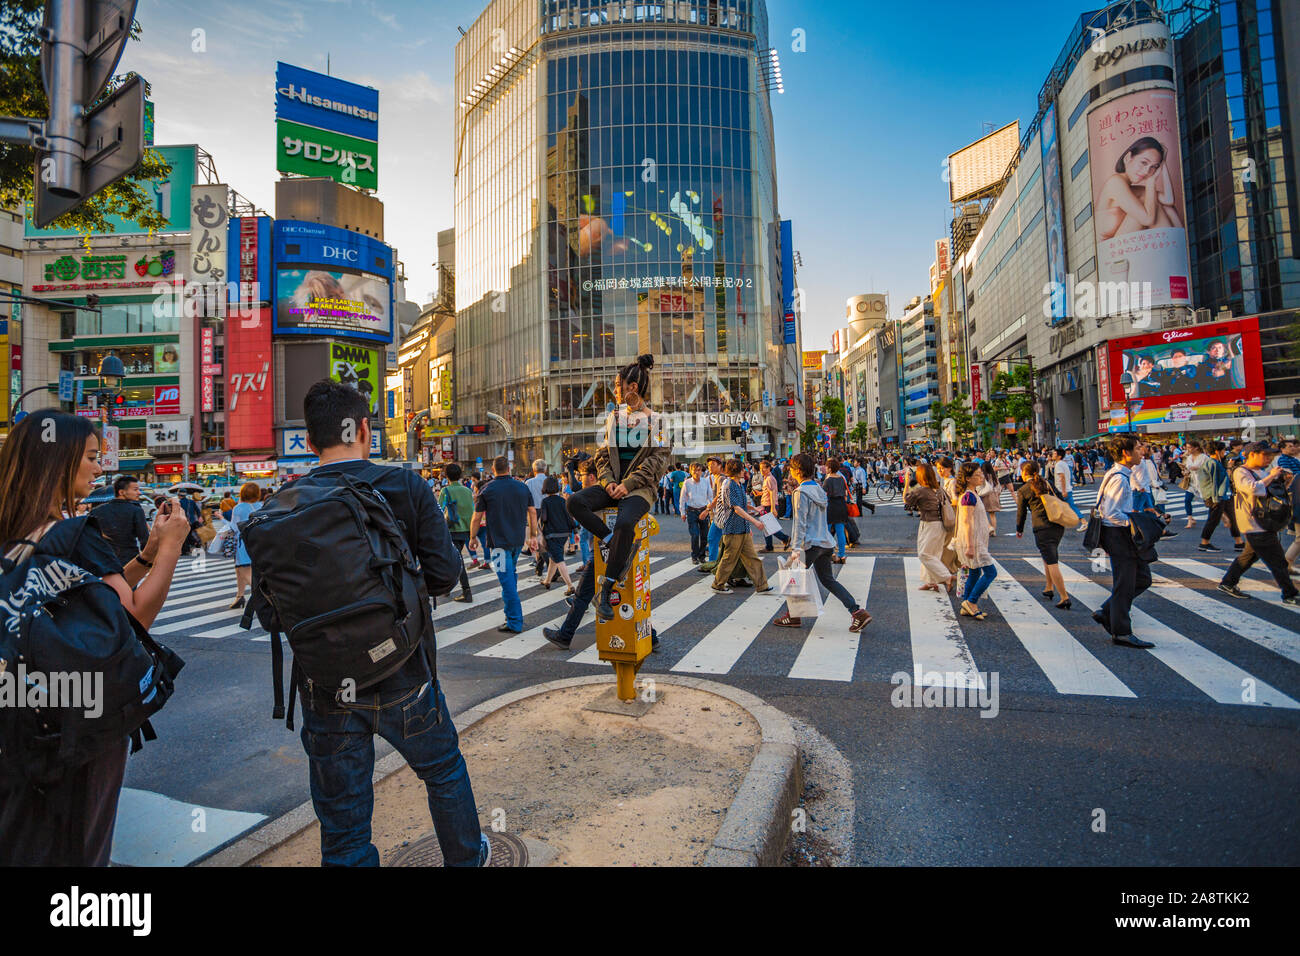 Croisement de Shibuya, l'intersection la plus occupée dans le monde, Tokyo, Japon, Asie Banque D'Images